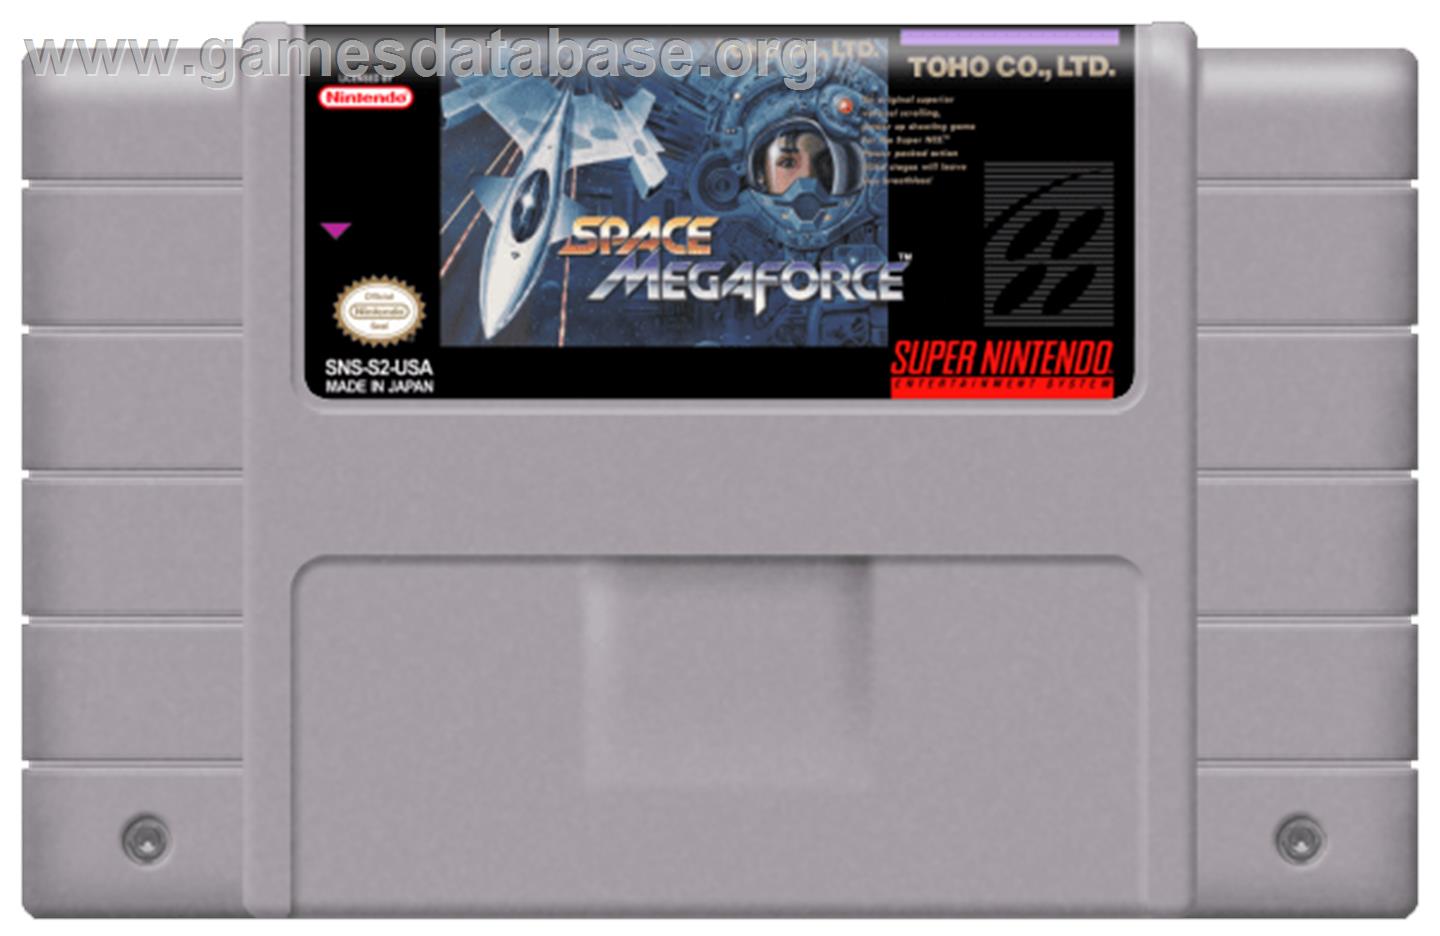 Space Megaforce - Nintendo SNES - Artwork - Cartridge